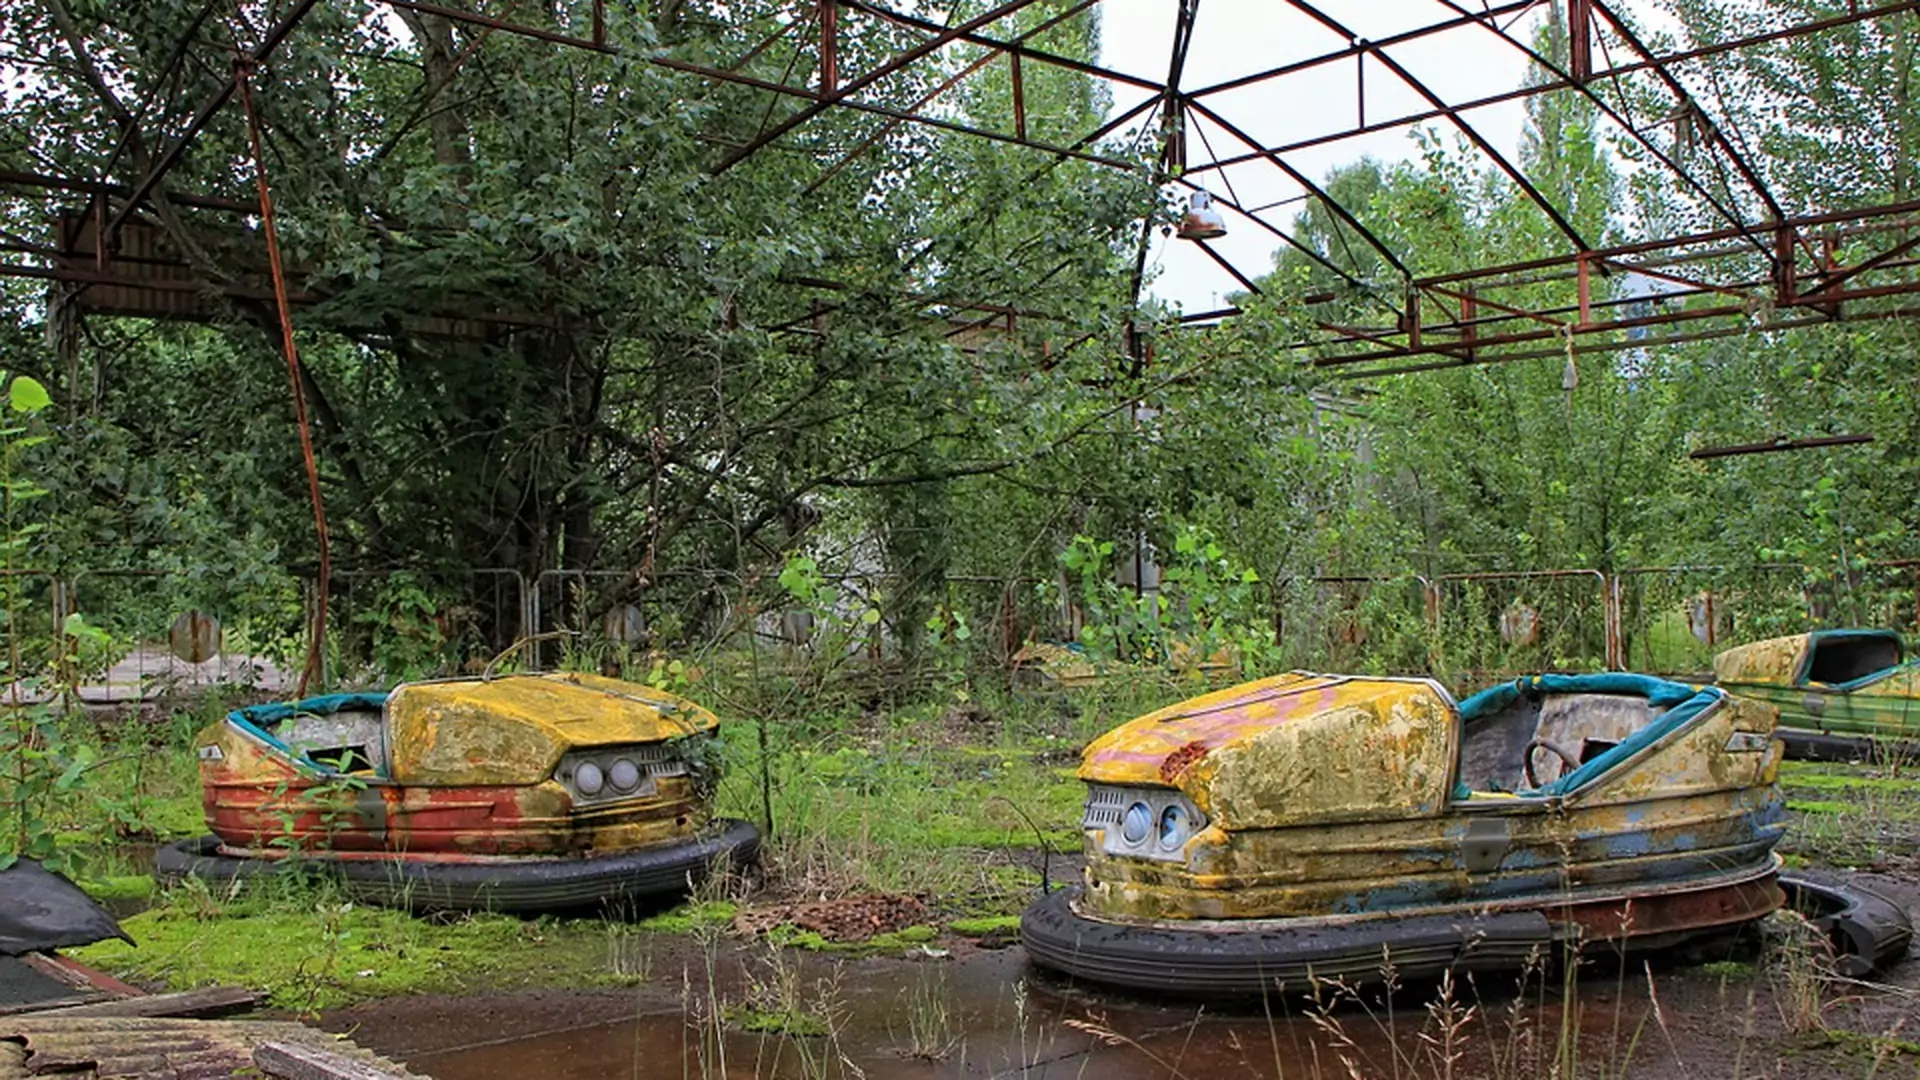 Za 10 lat może nie być już Czarnobyla. Co zrobić, żeby pojechać do skażonej strefy?